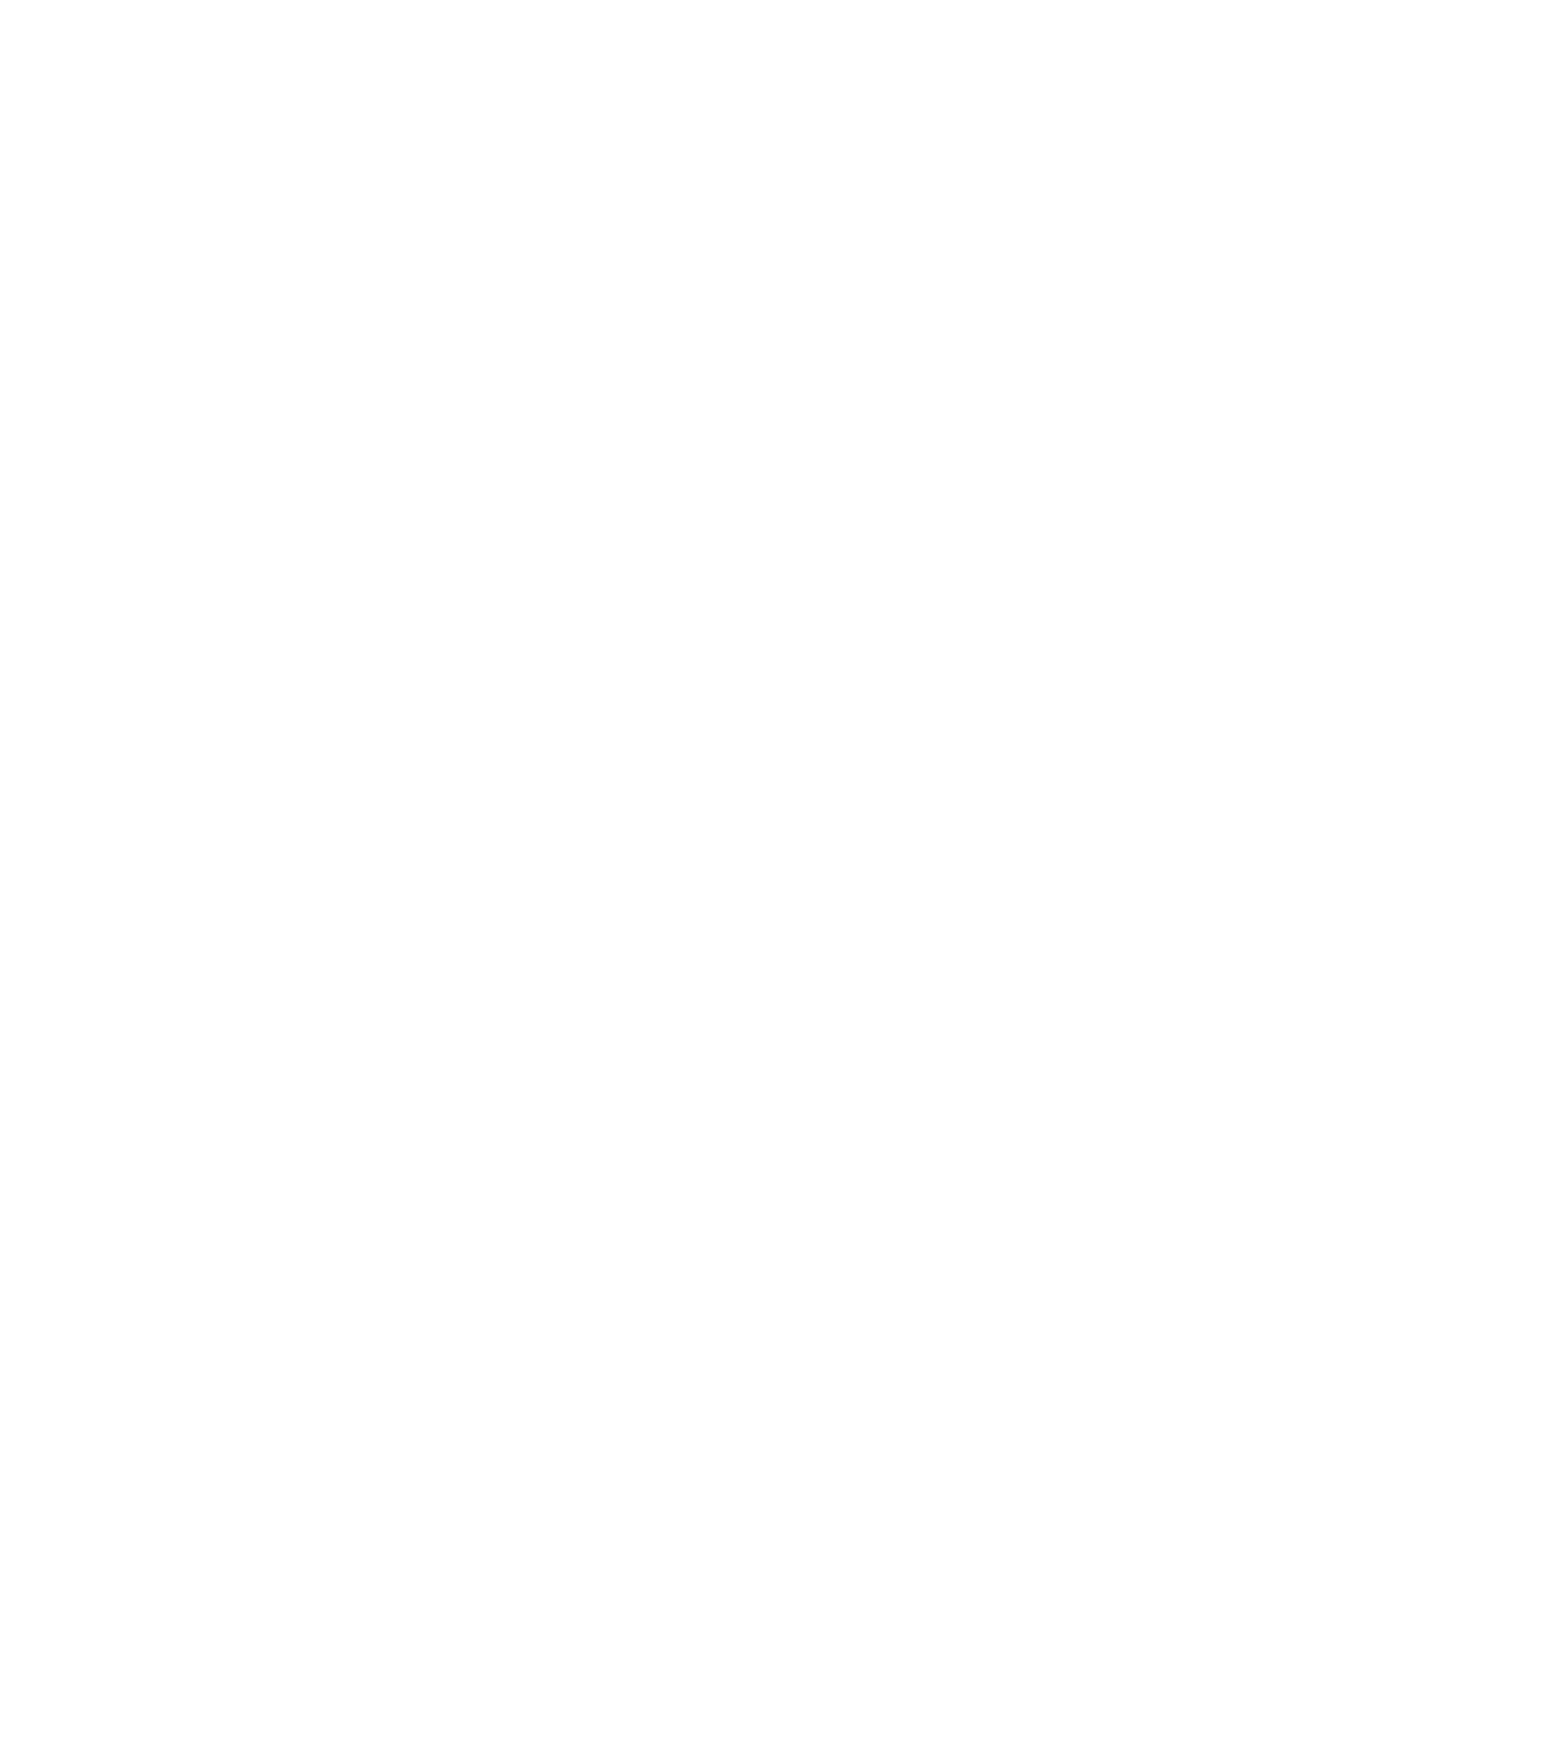 Zebra Technologies logo for dark backgrounds (transparent PNG)